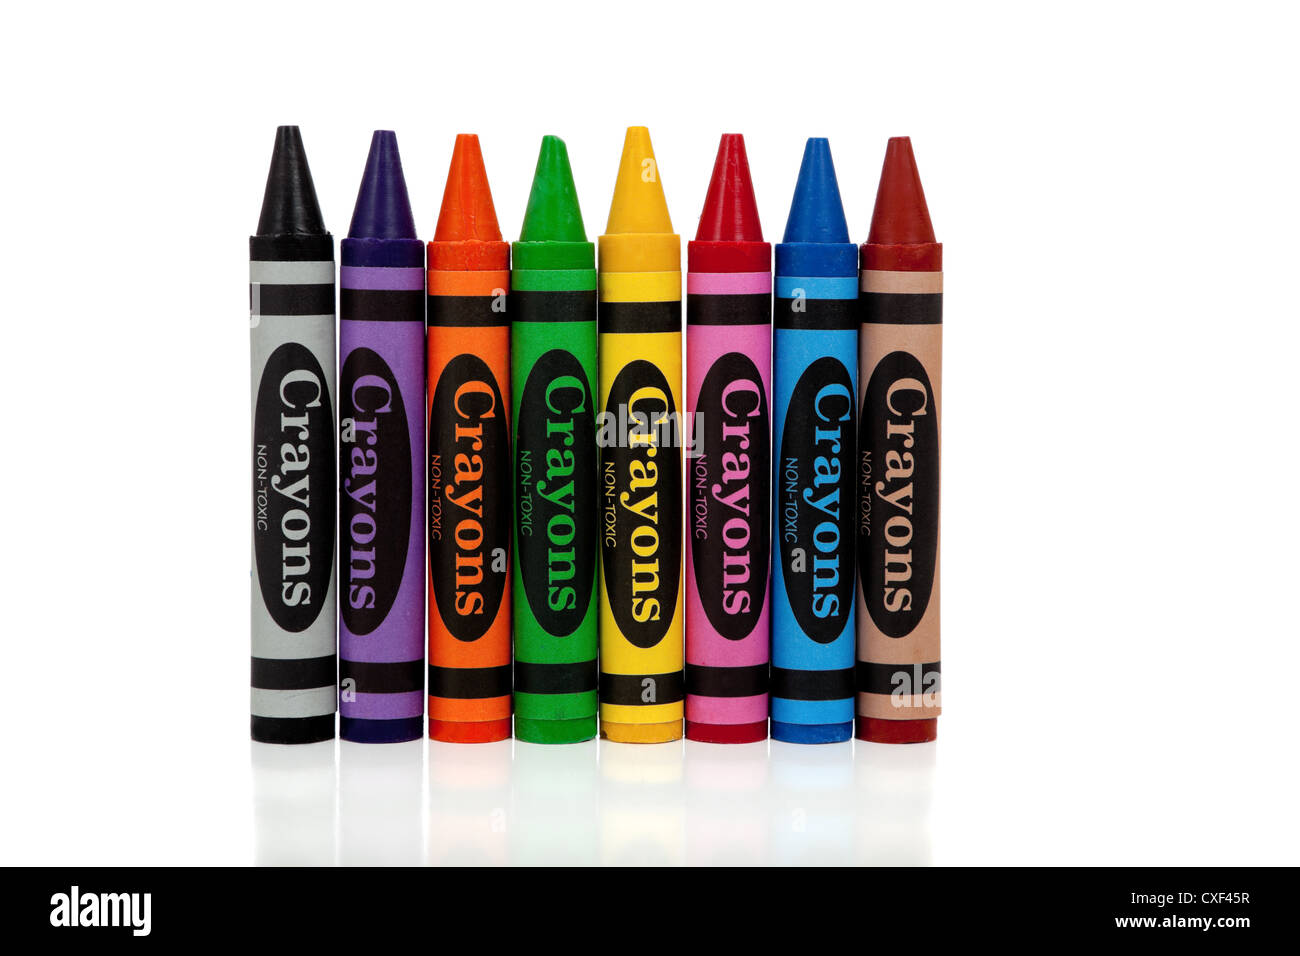 Un assortiment de crayons de couleur arc-en-ciel sur un fond blanc Banque D'Images